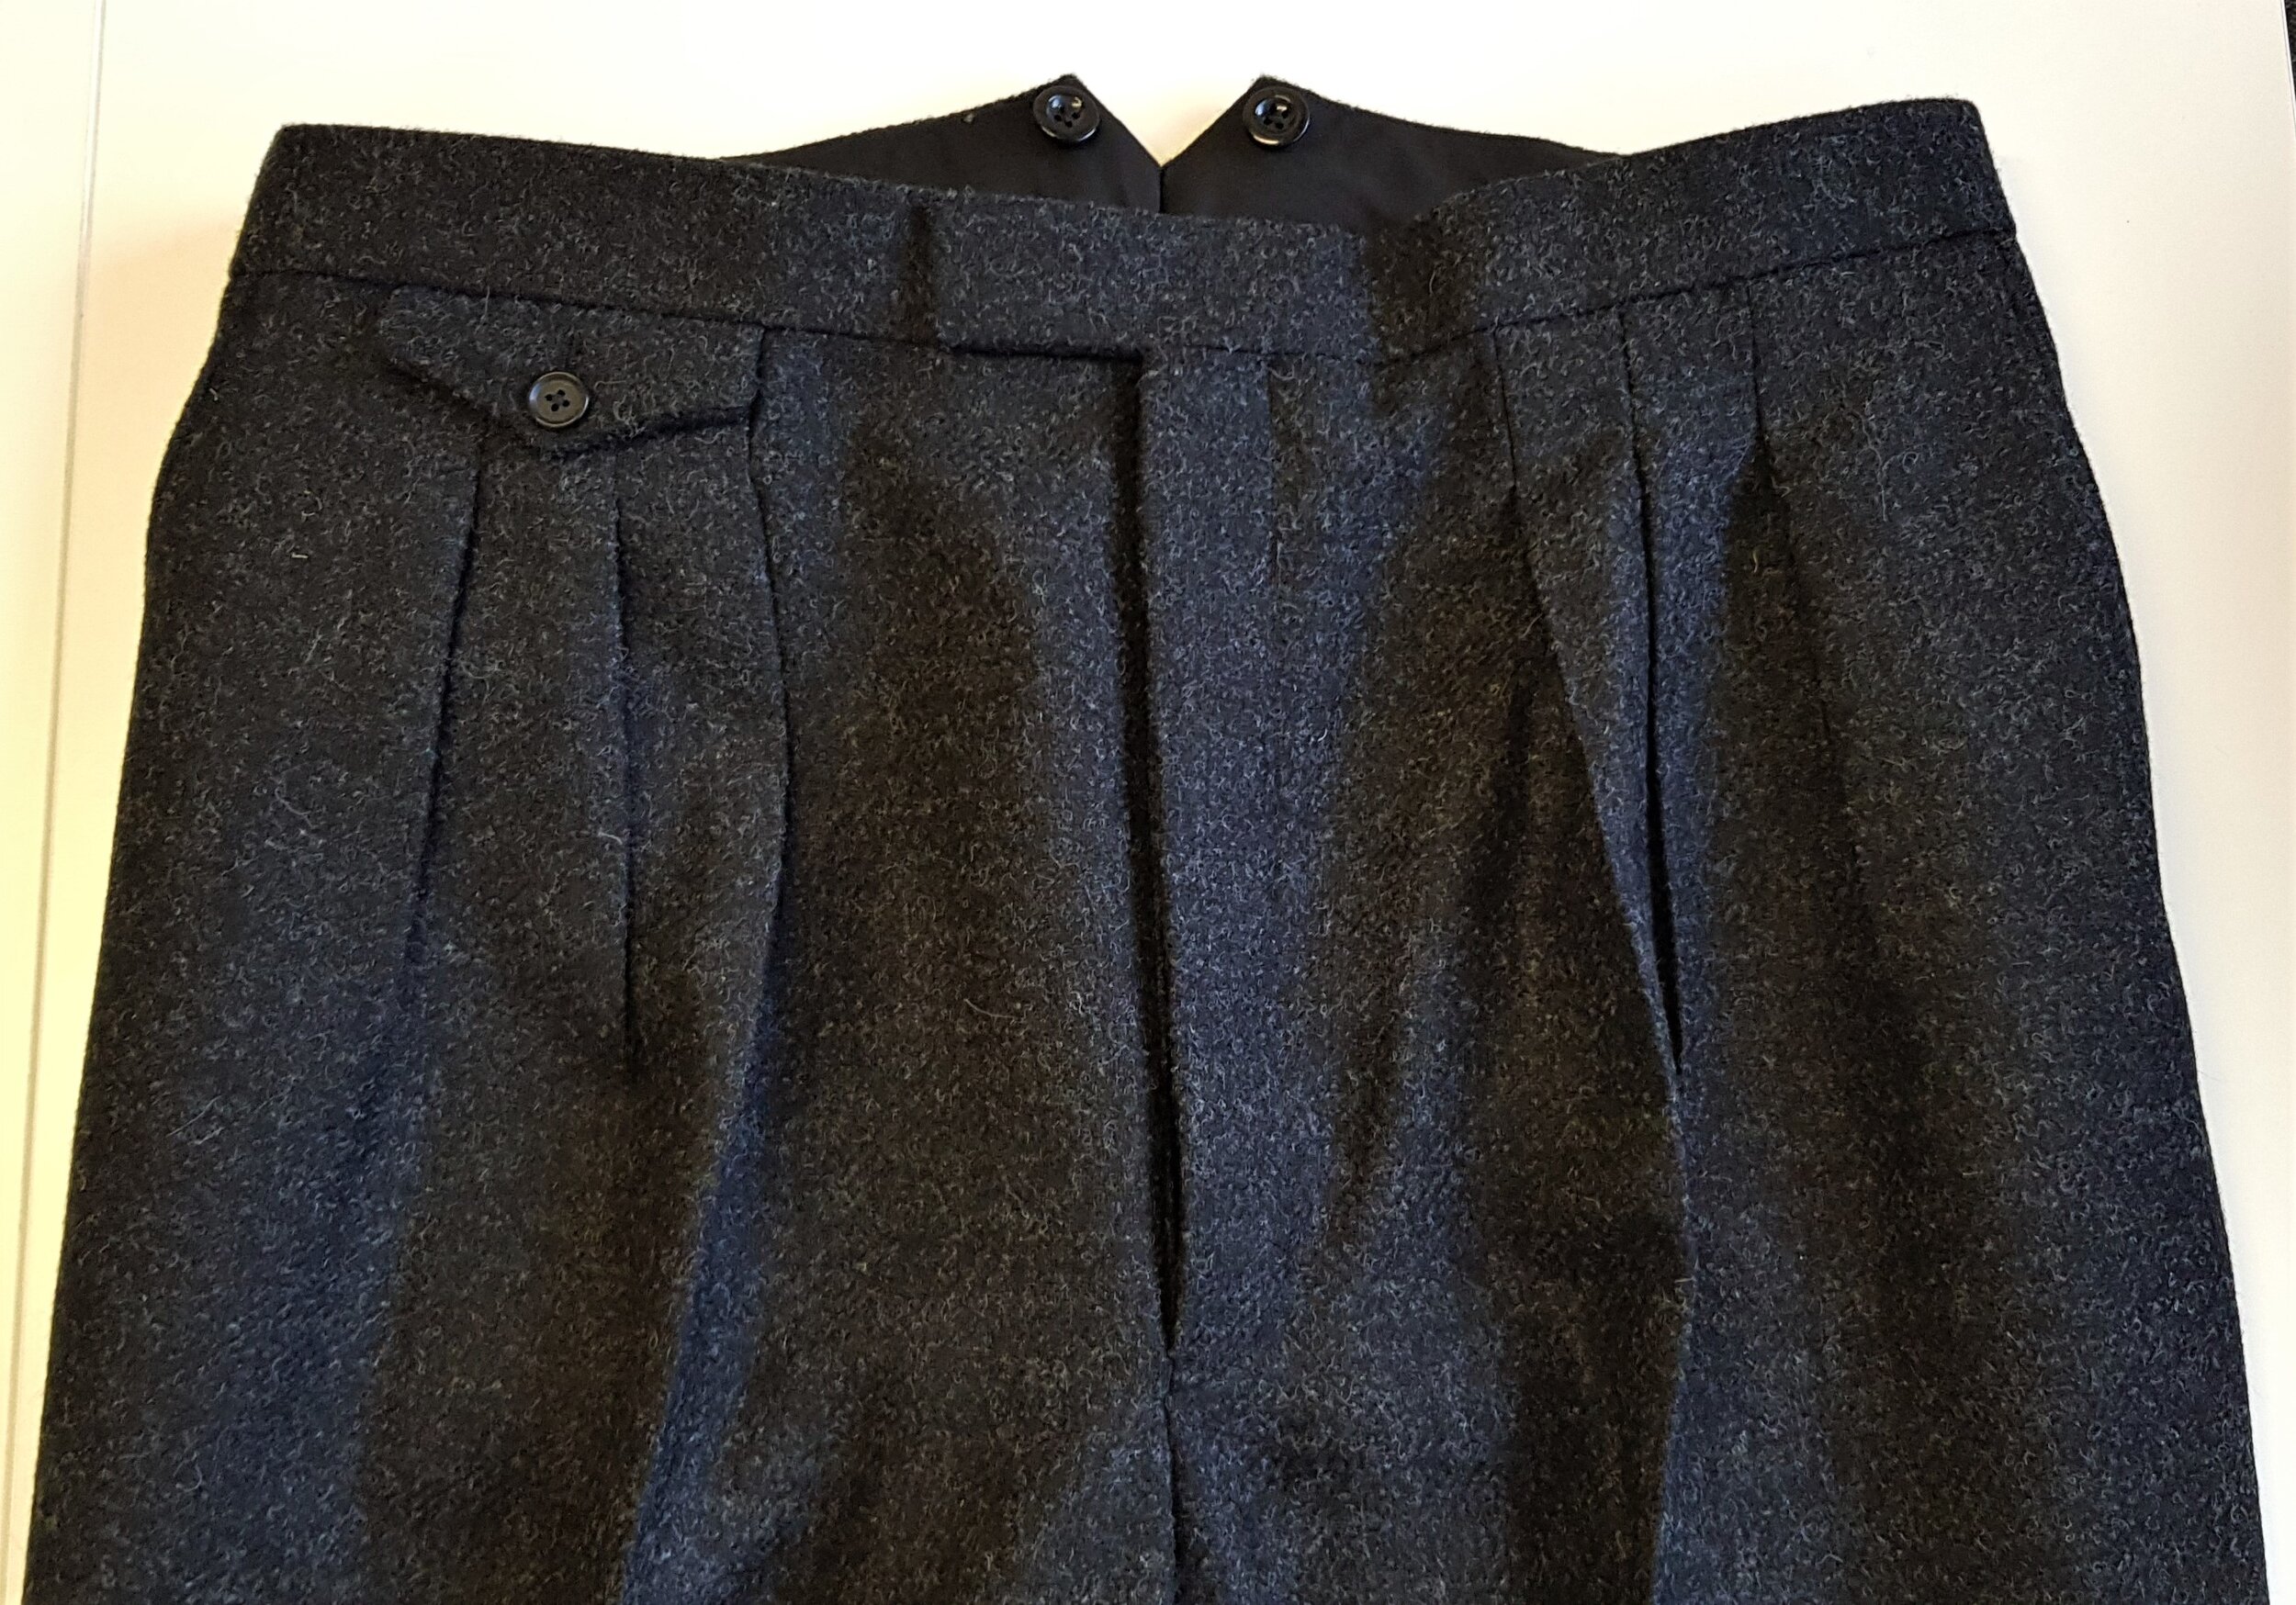 3 Piece Suit in Charcoal Shetland Tweed (8).jpg